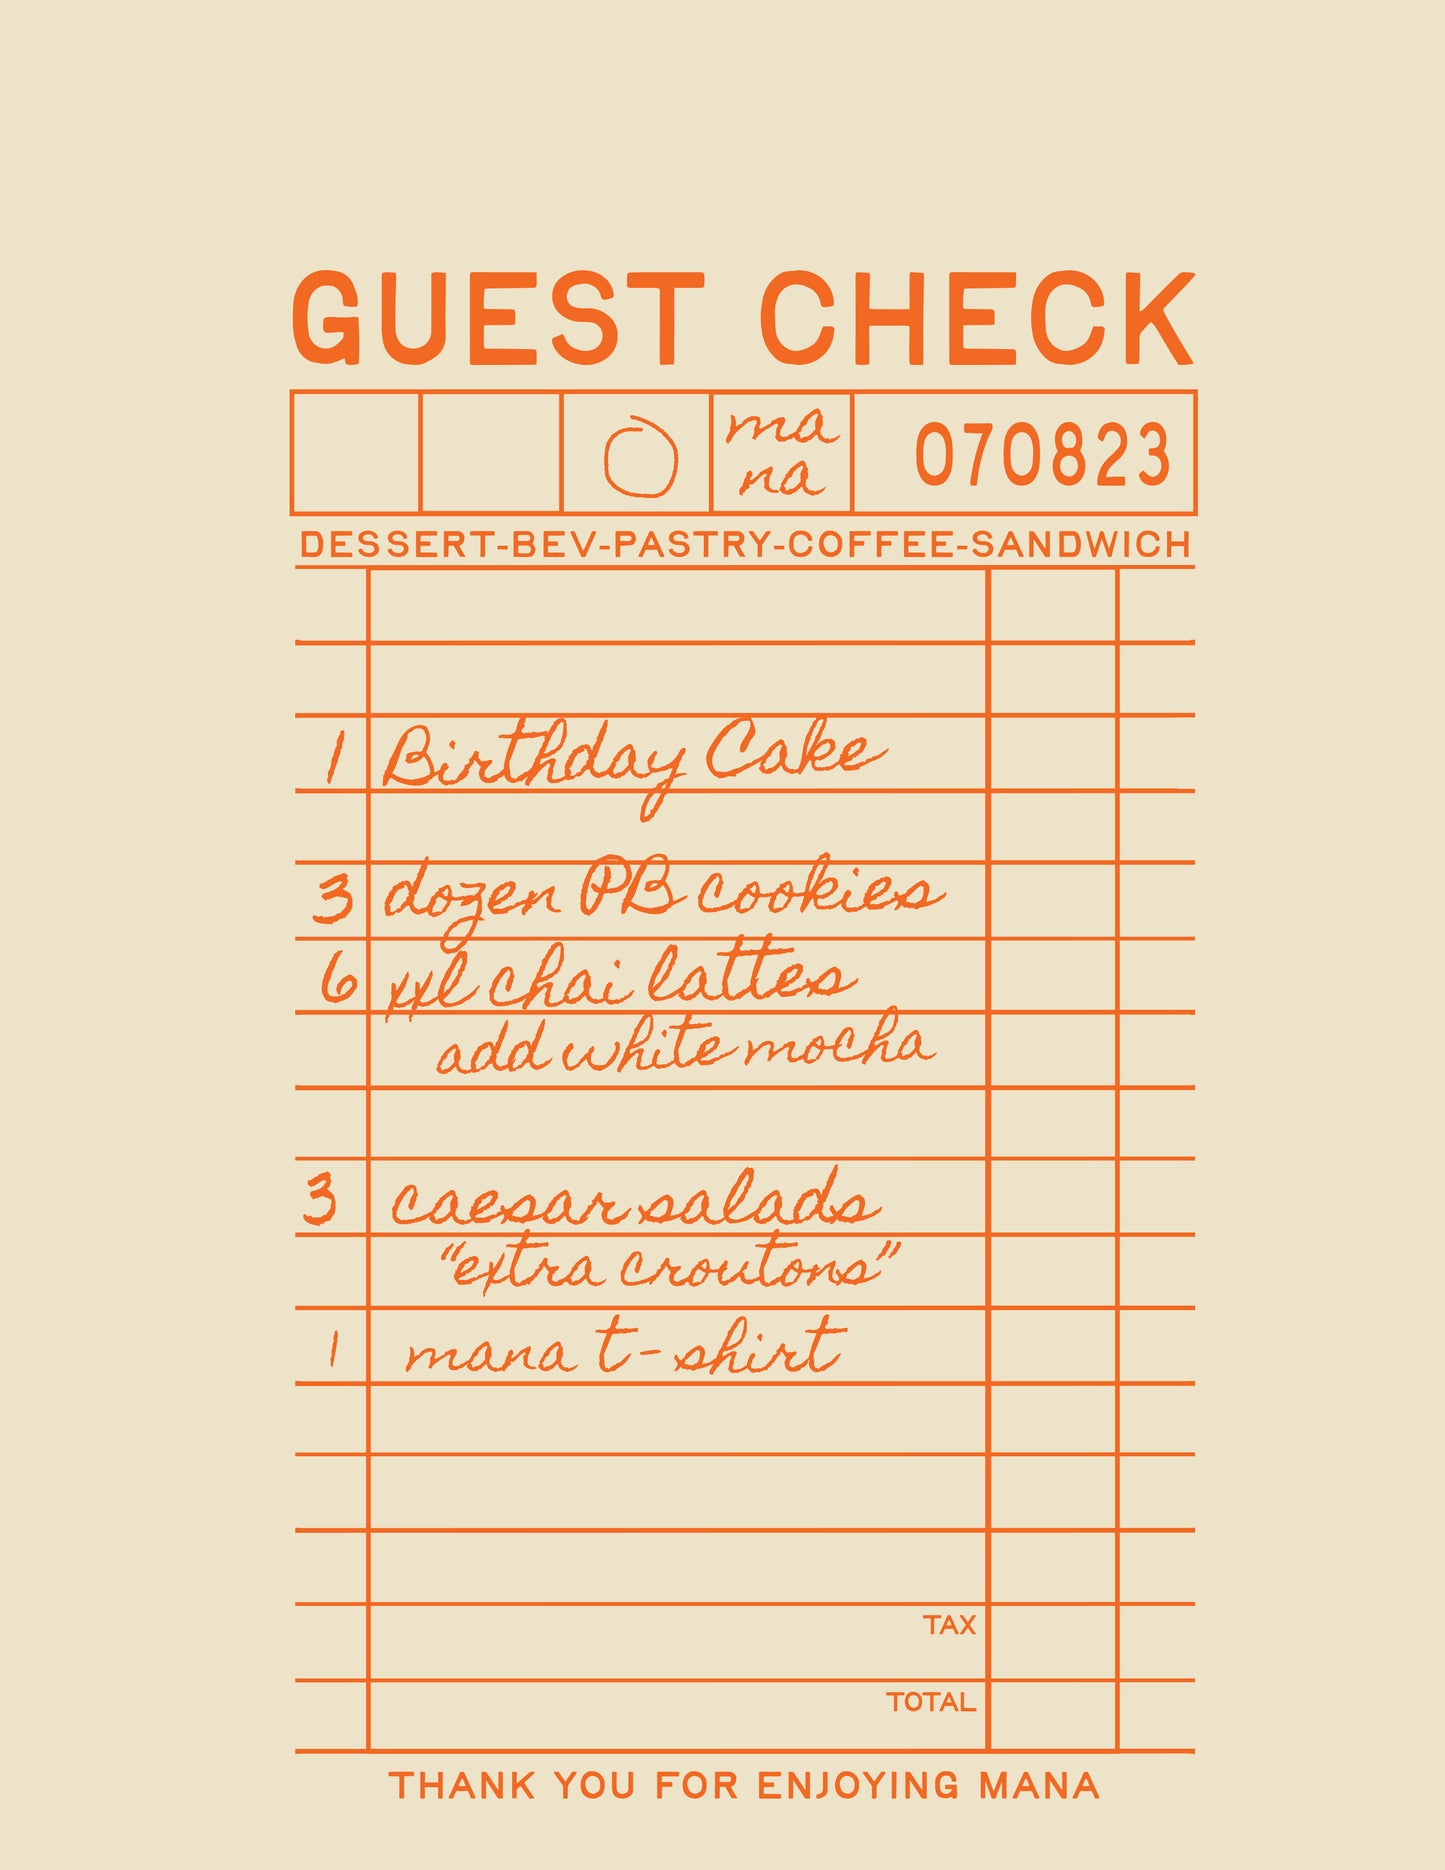 Guest Check TShirt